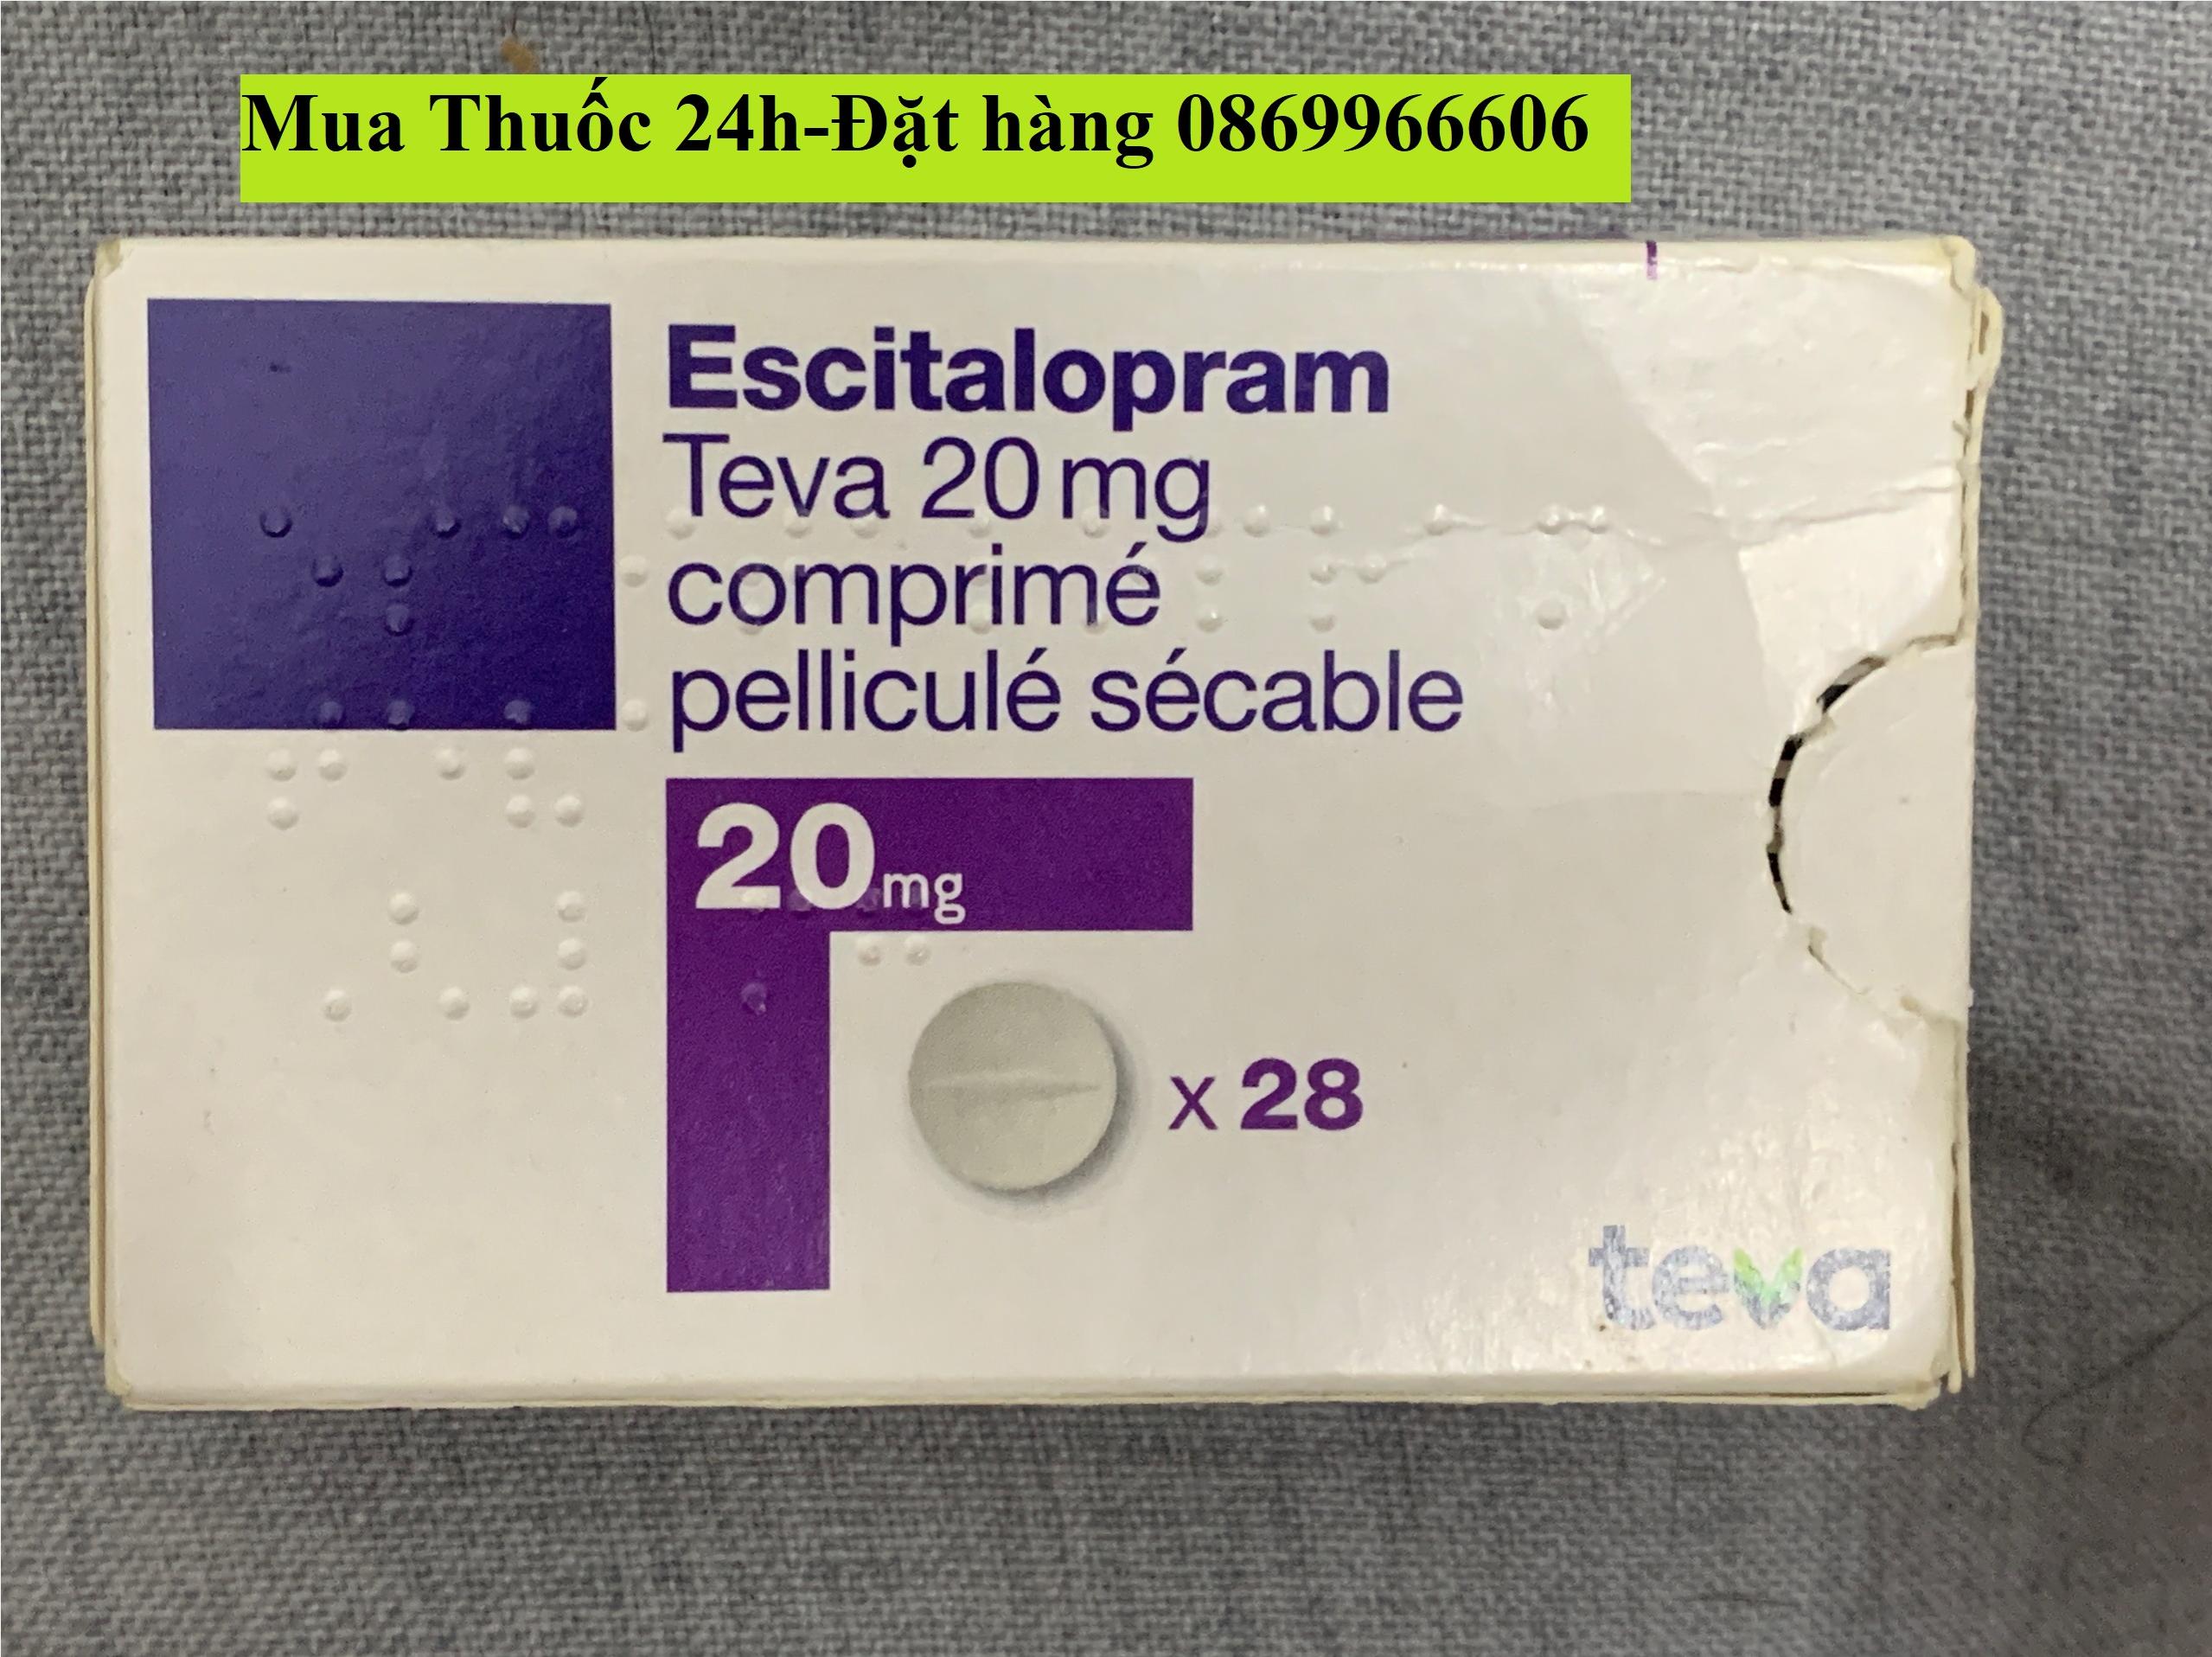 Thuốc Escitalopram Teva 20mg giá bao nhiêu mua ở đâu?